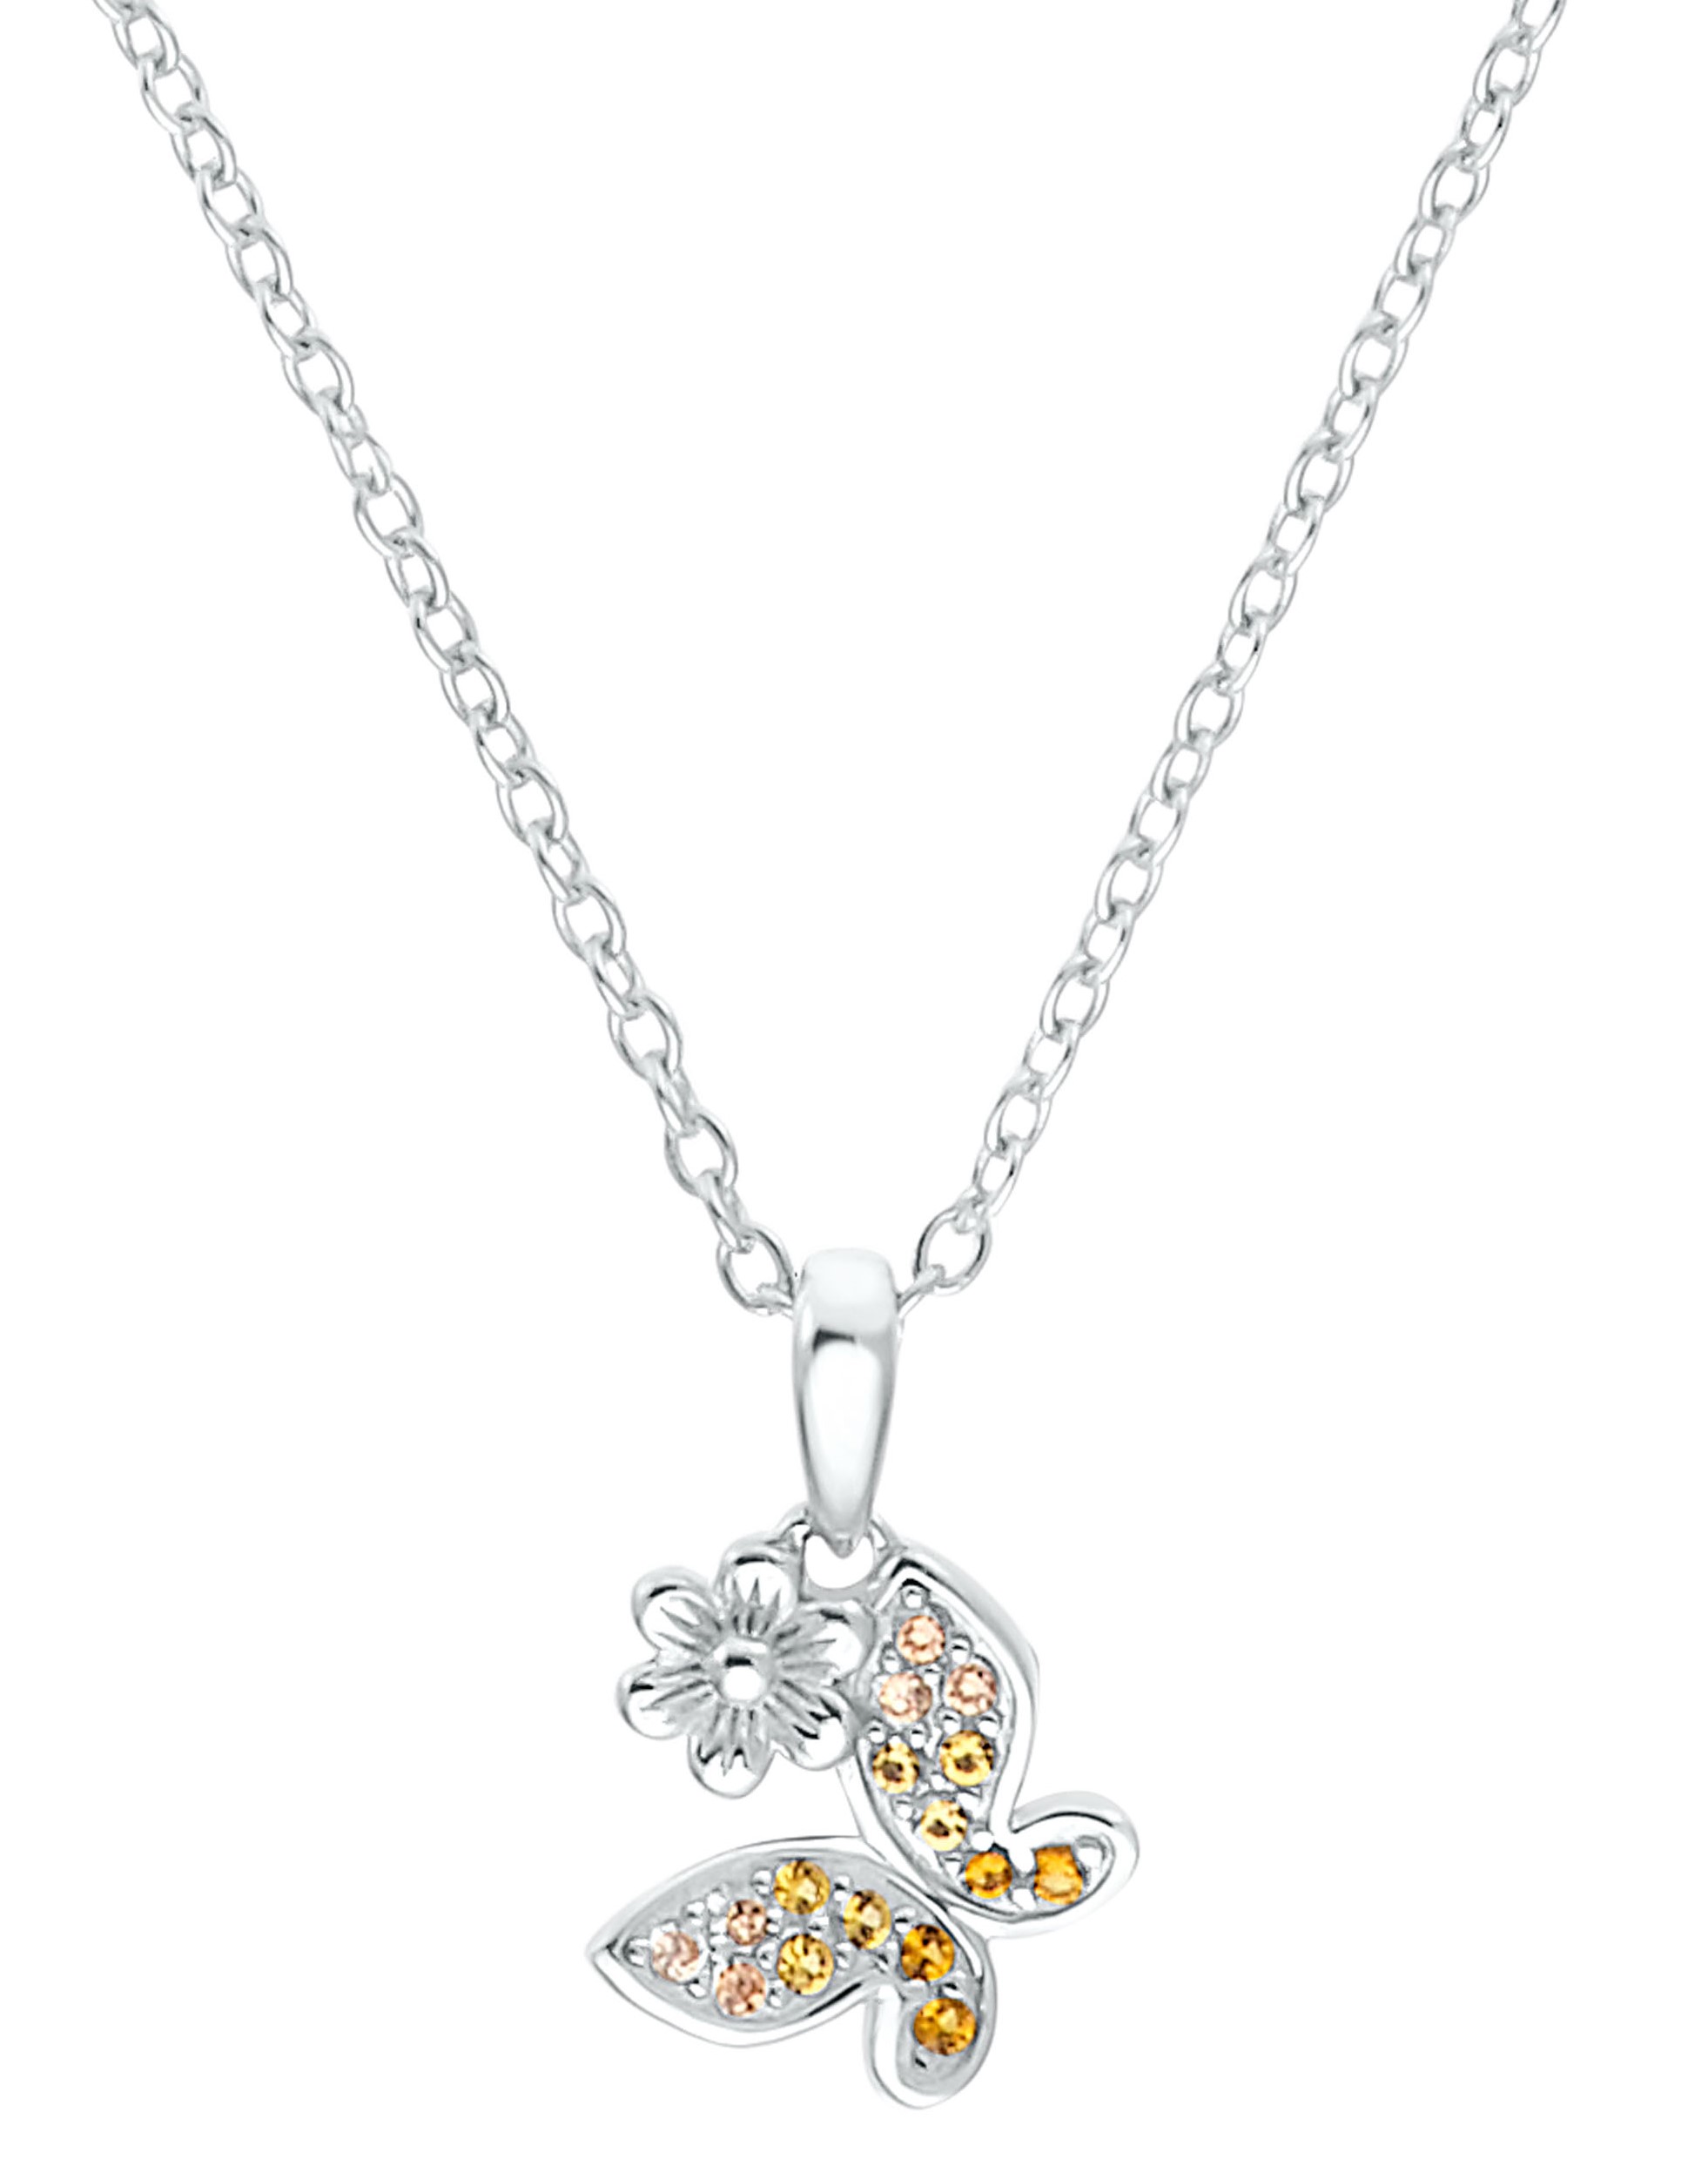 Lillifee Halskette 2035991 Silber 925/- mit Anhänger Schmetterling und Blüte Zirkonia apricot gelb